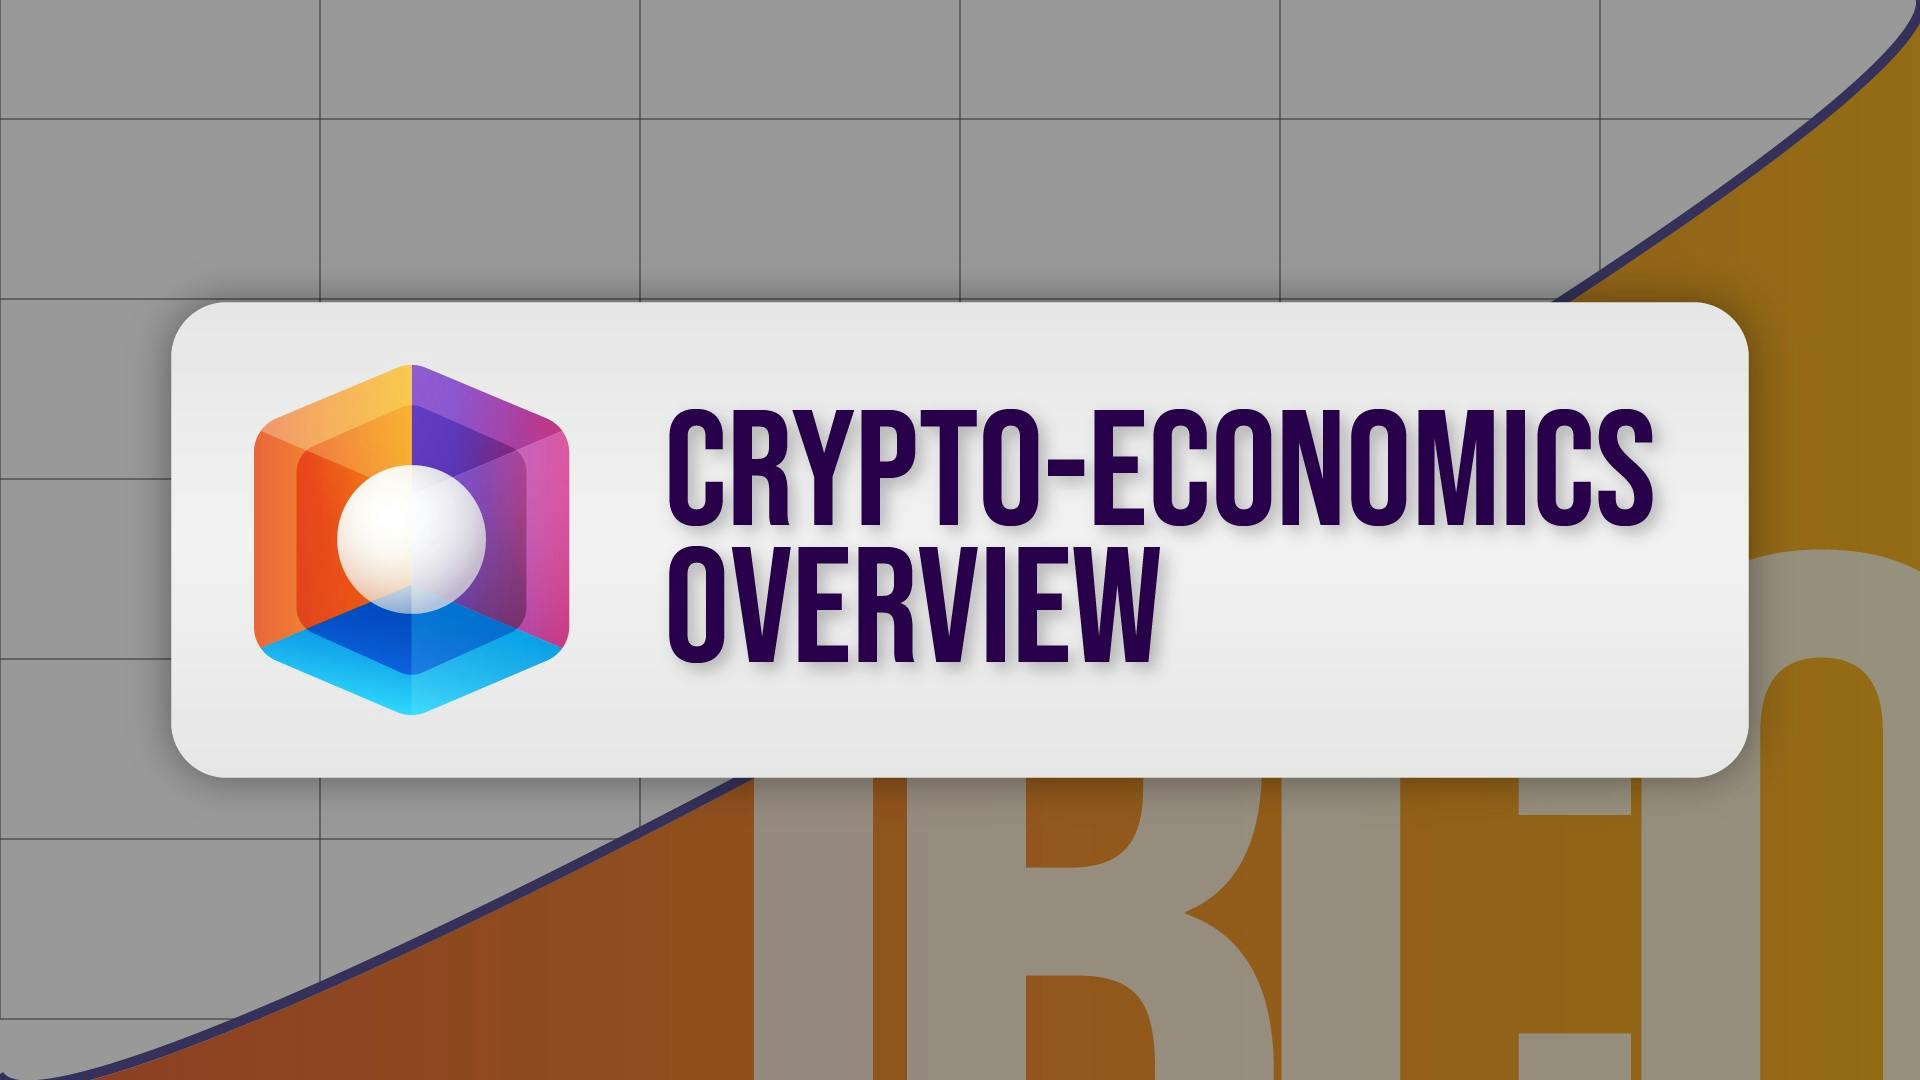 OVR Crypto-Economics Overview